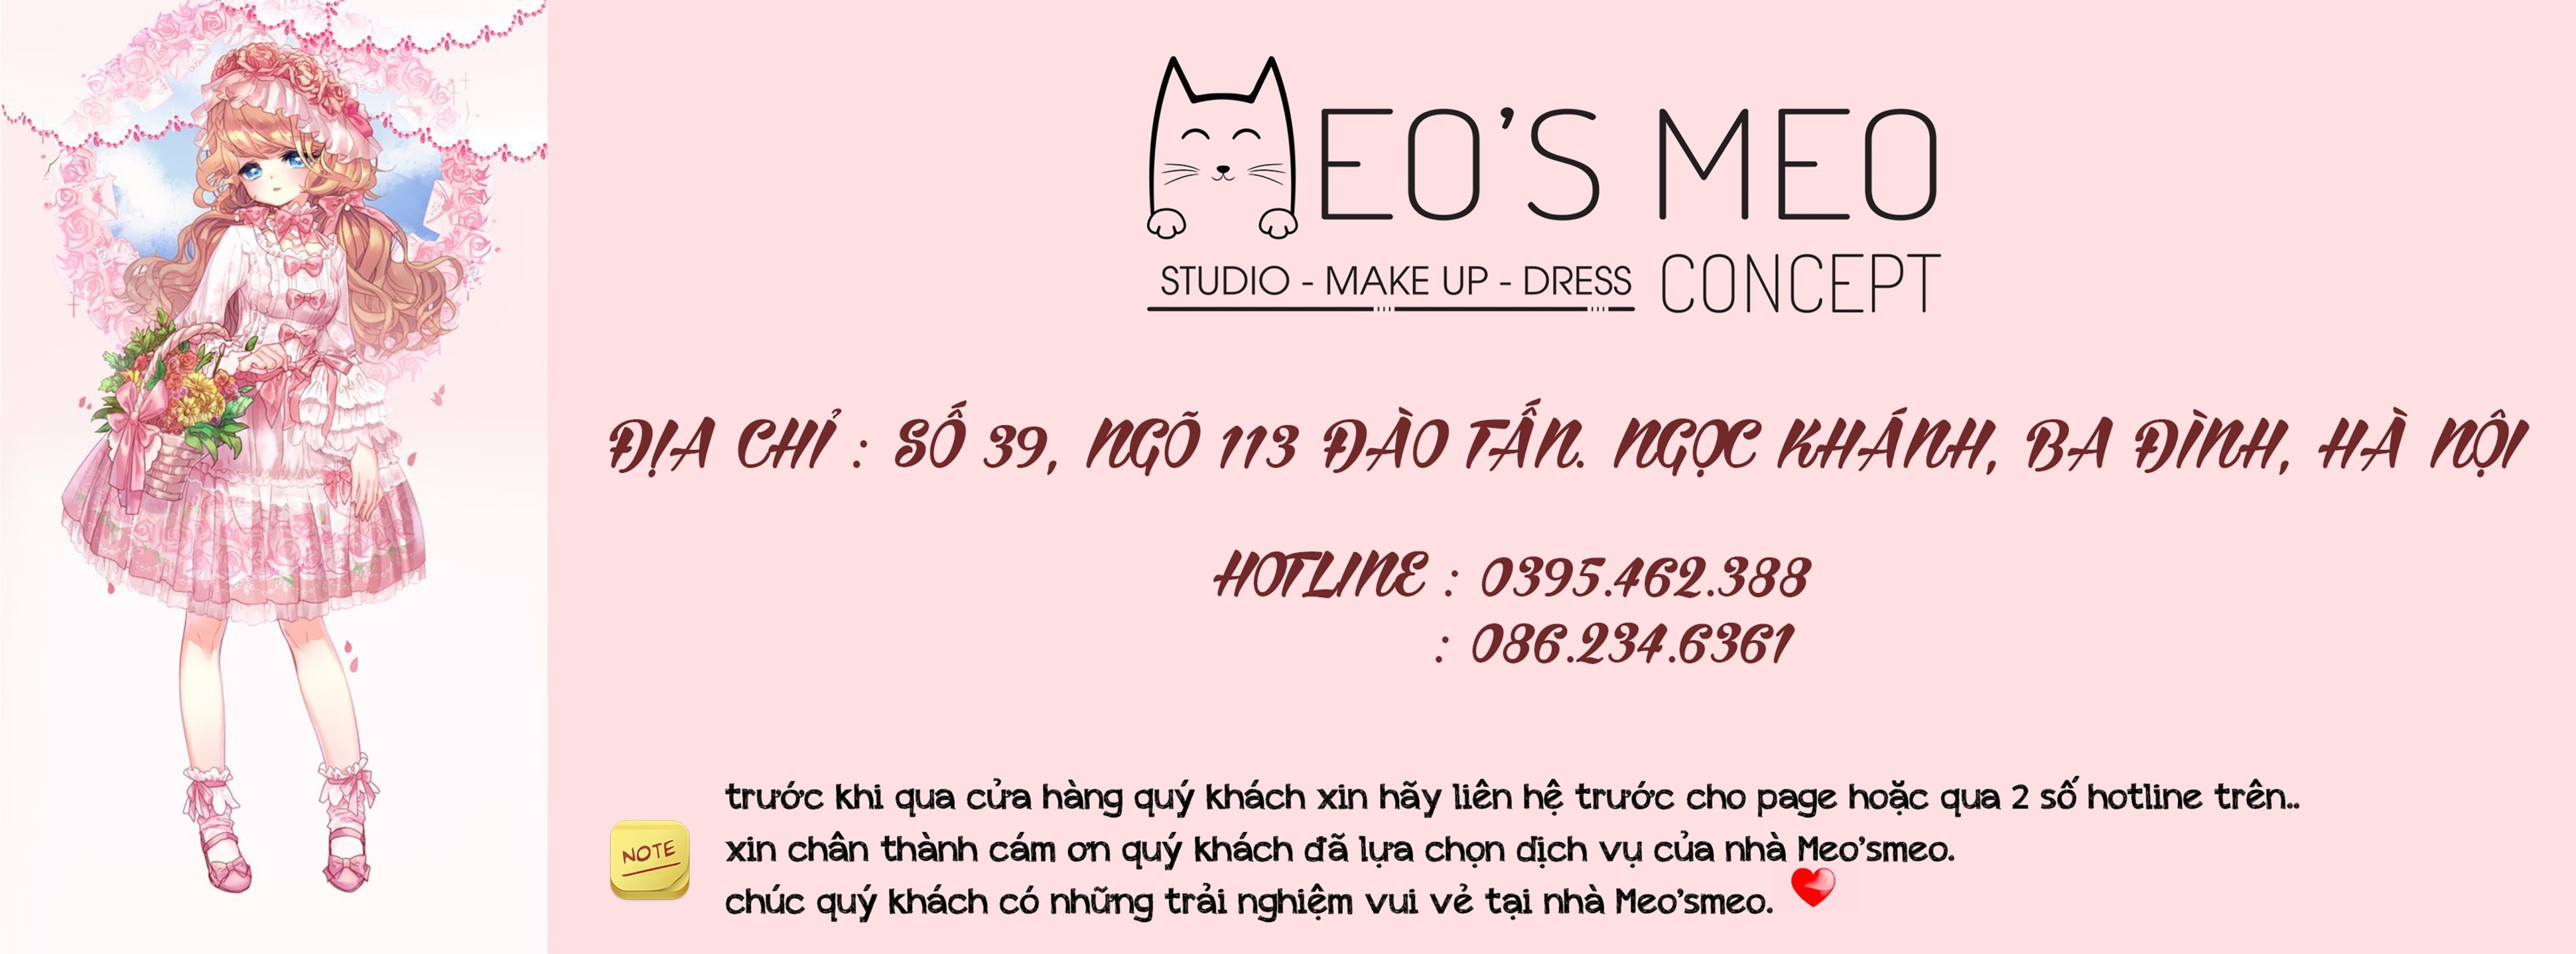 Meo’smeo Concept - Cho Thuê Trang Phục, Phụ Kiện Chụp Ảnh.